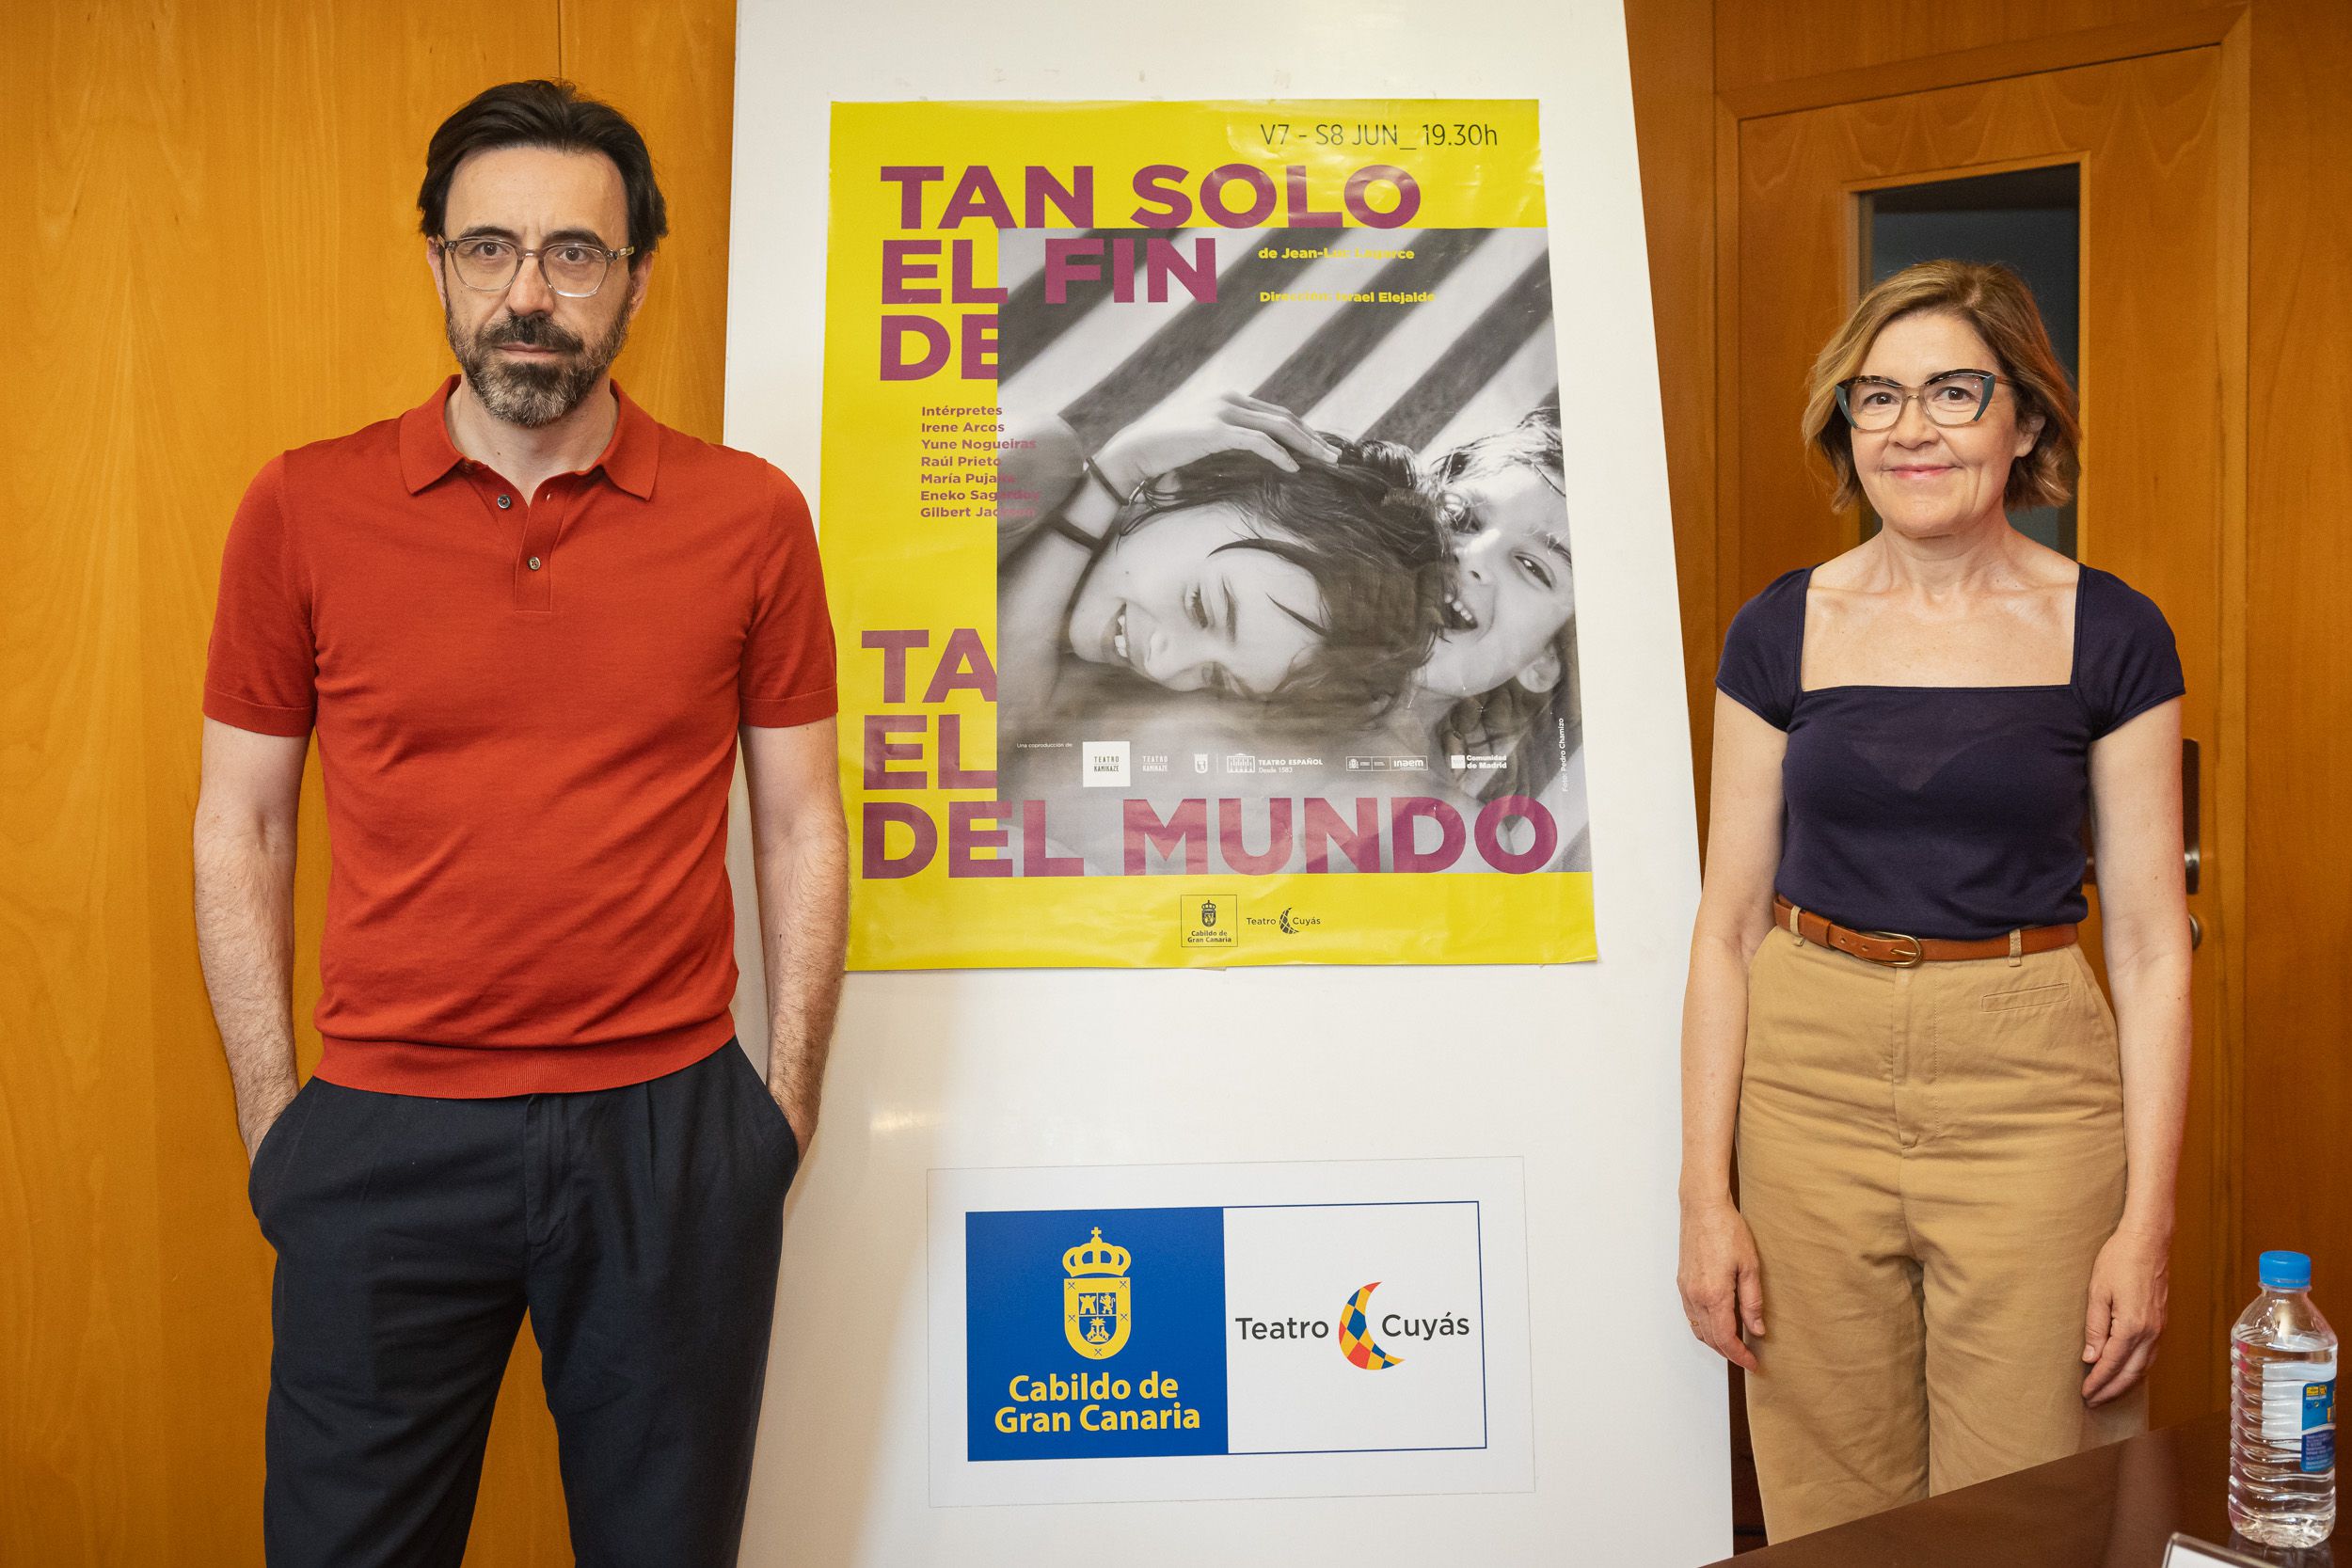 El Teatro Cuyás representará la obra 'Tan solo el fin del mundo' con Israel Elejalde y María Pujalte